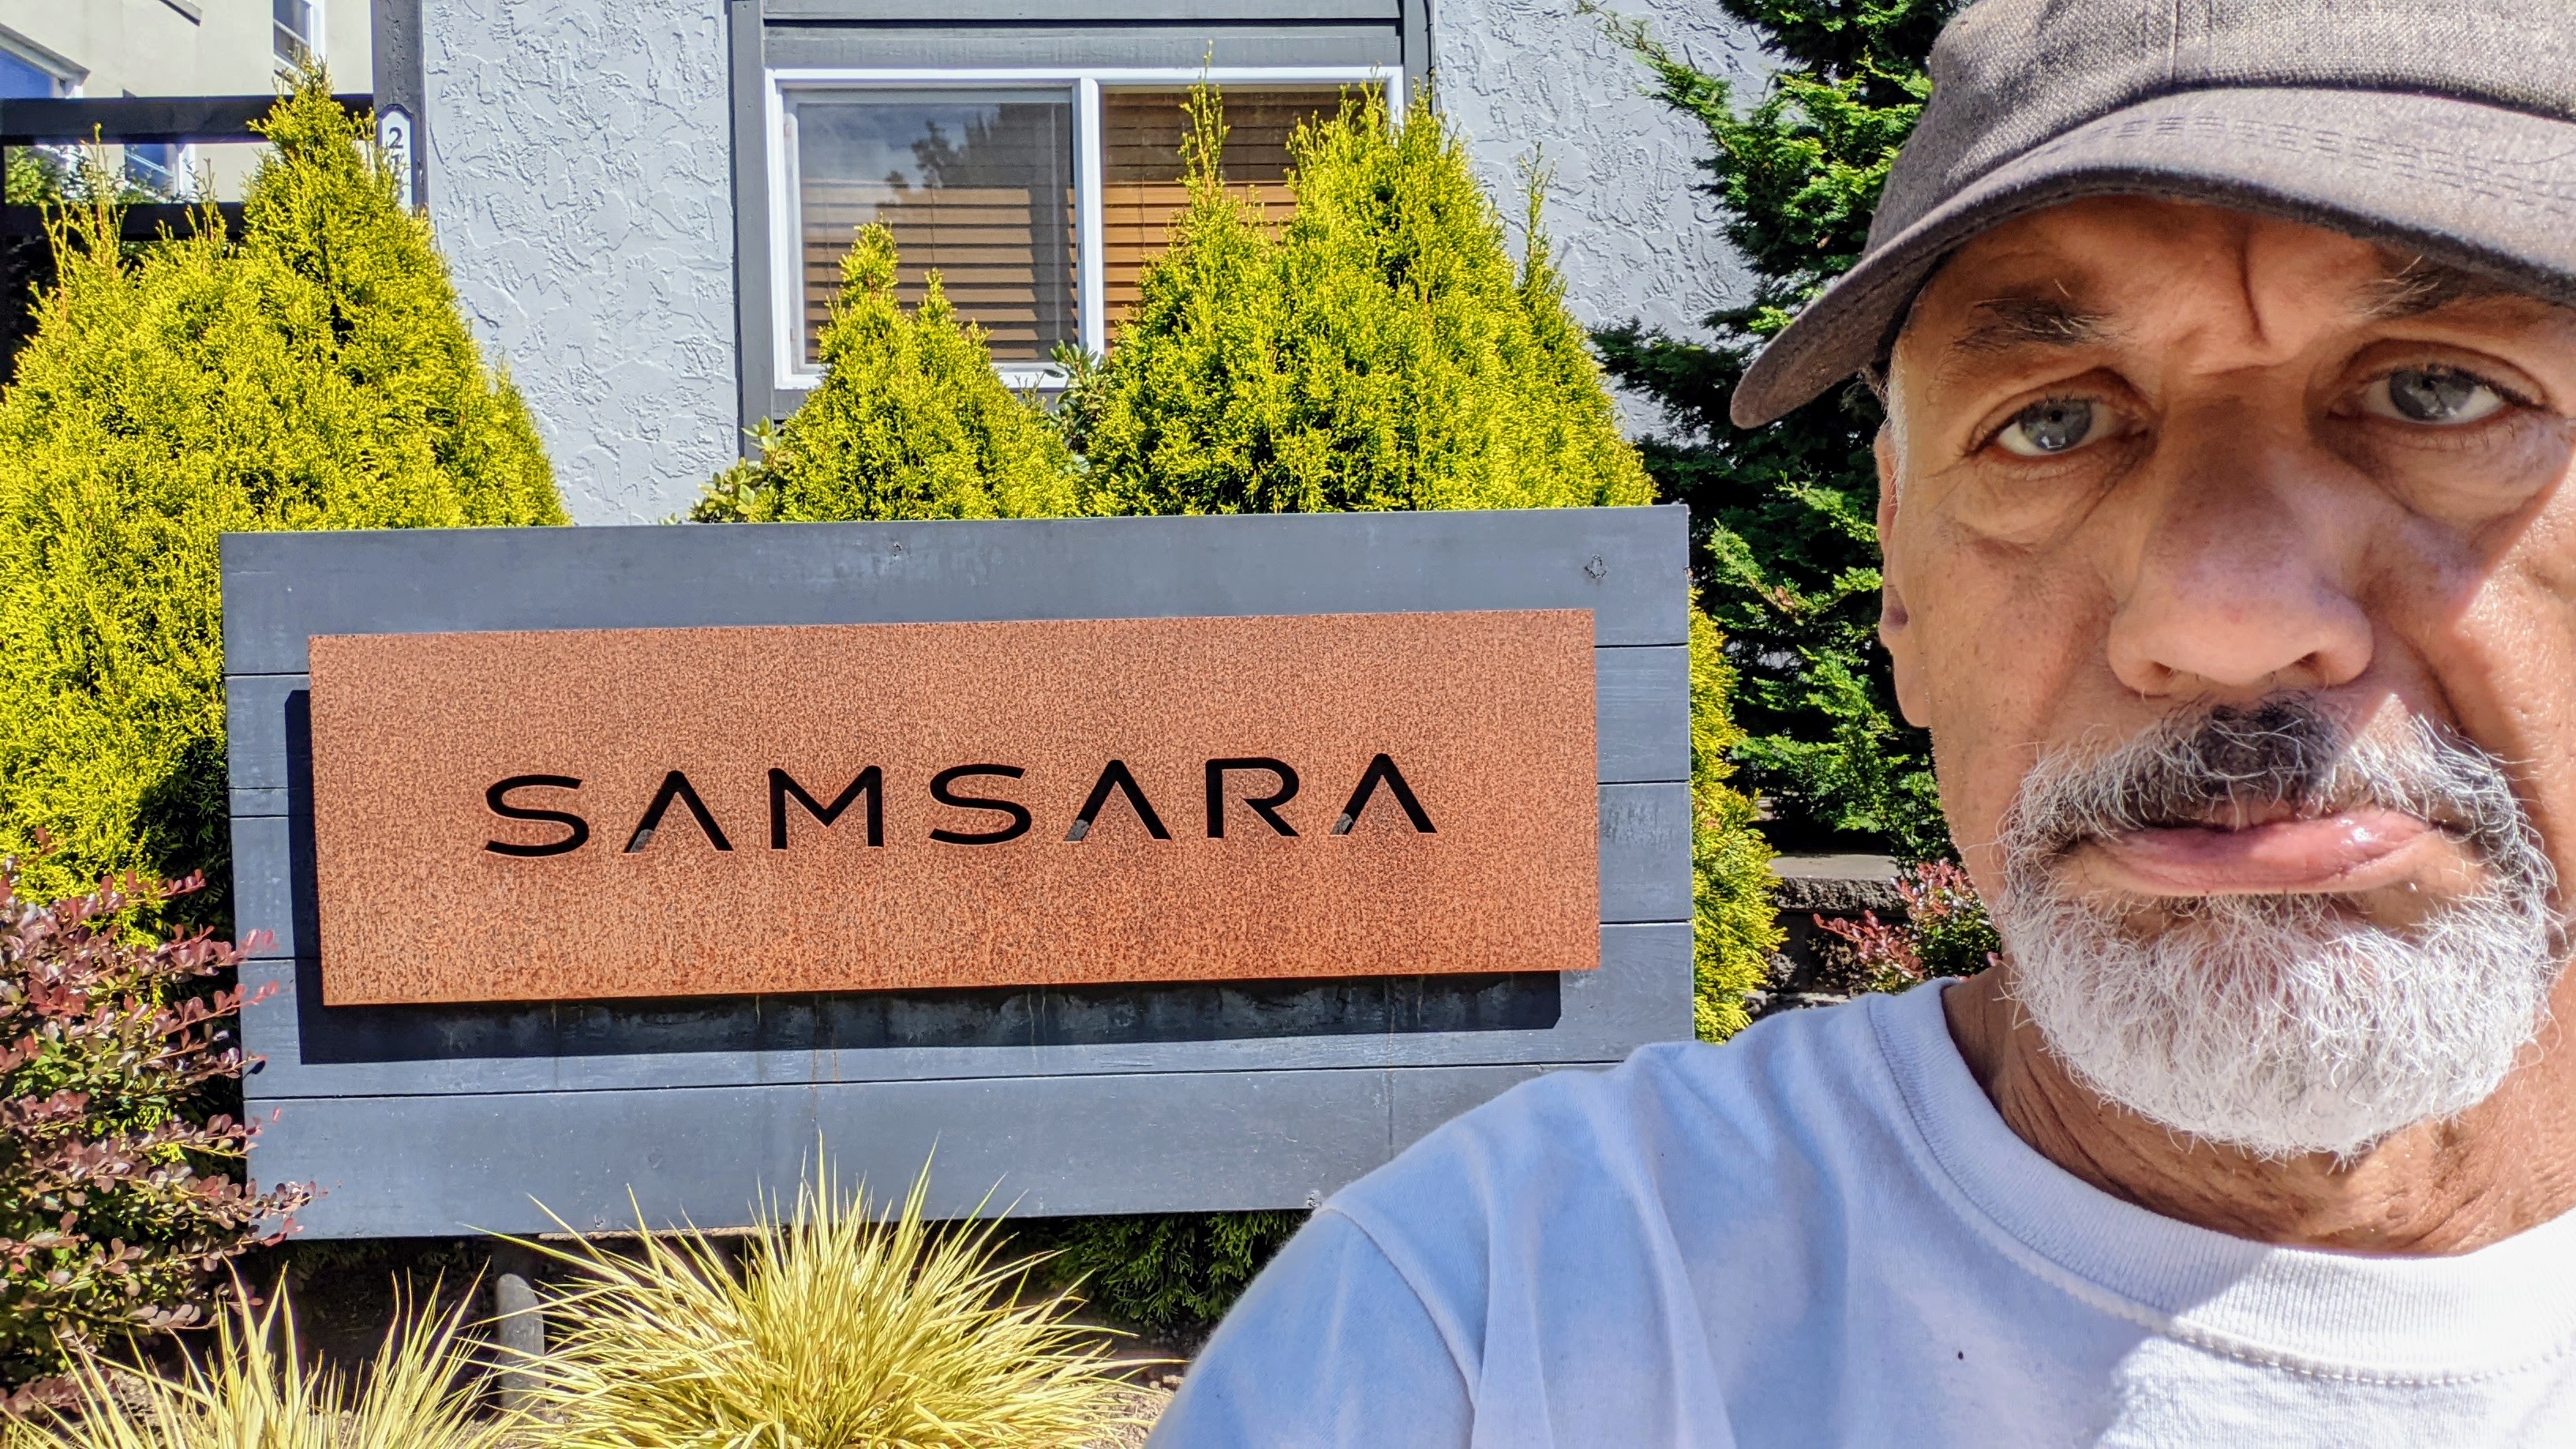 samsara apartments West Seattle 98116